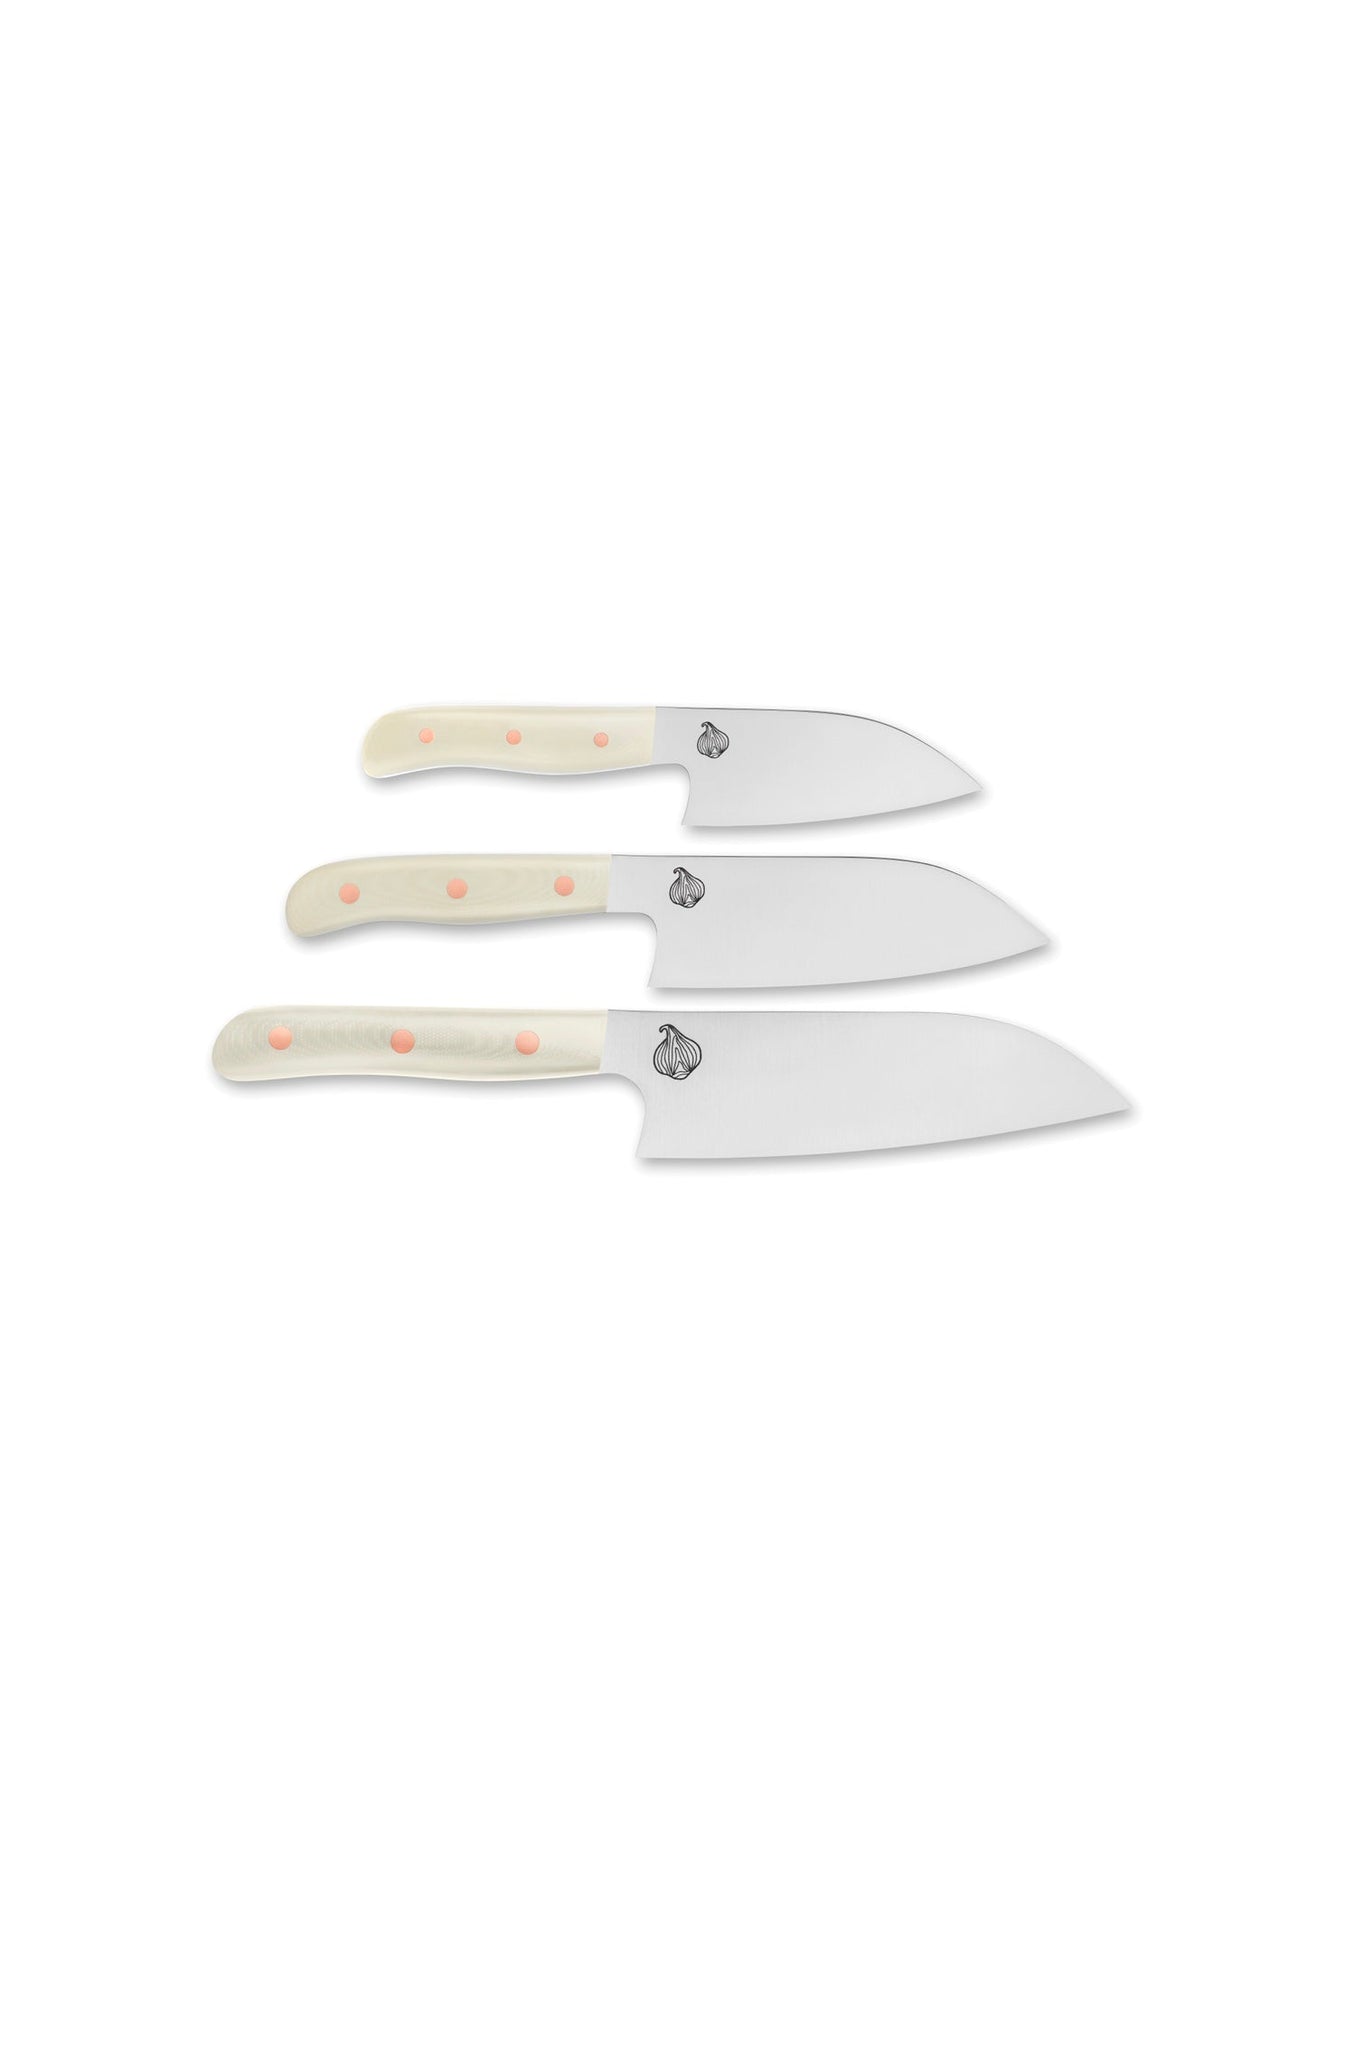 Sanrok Chef Knife Set - Cudaway